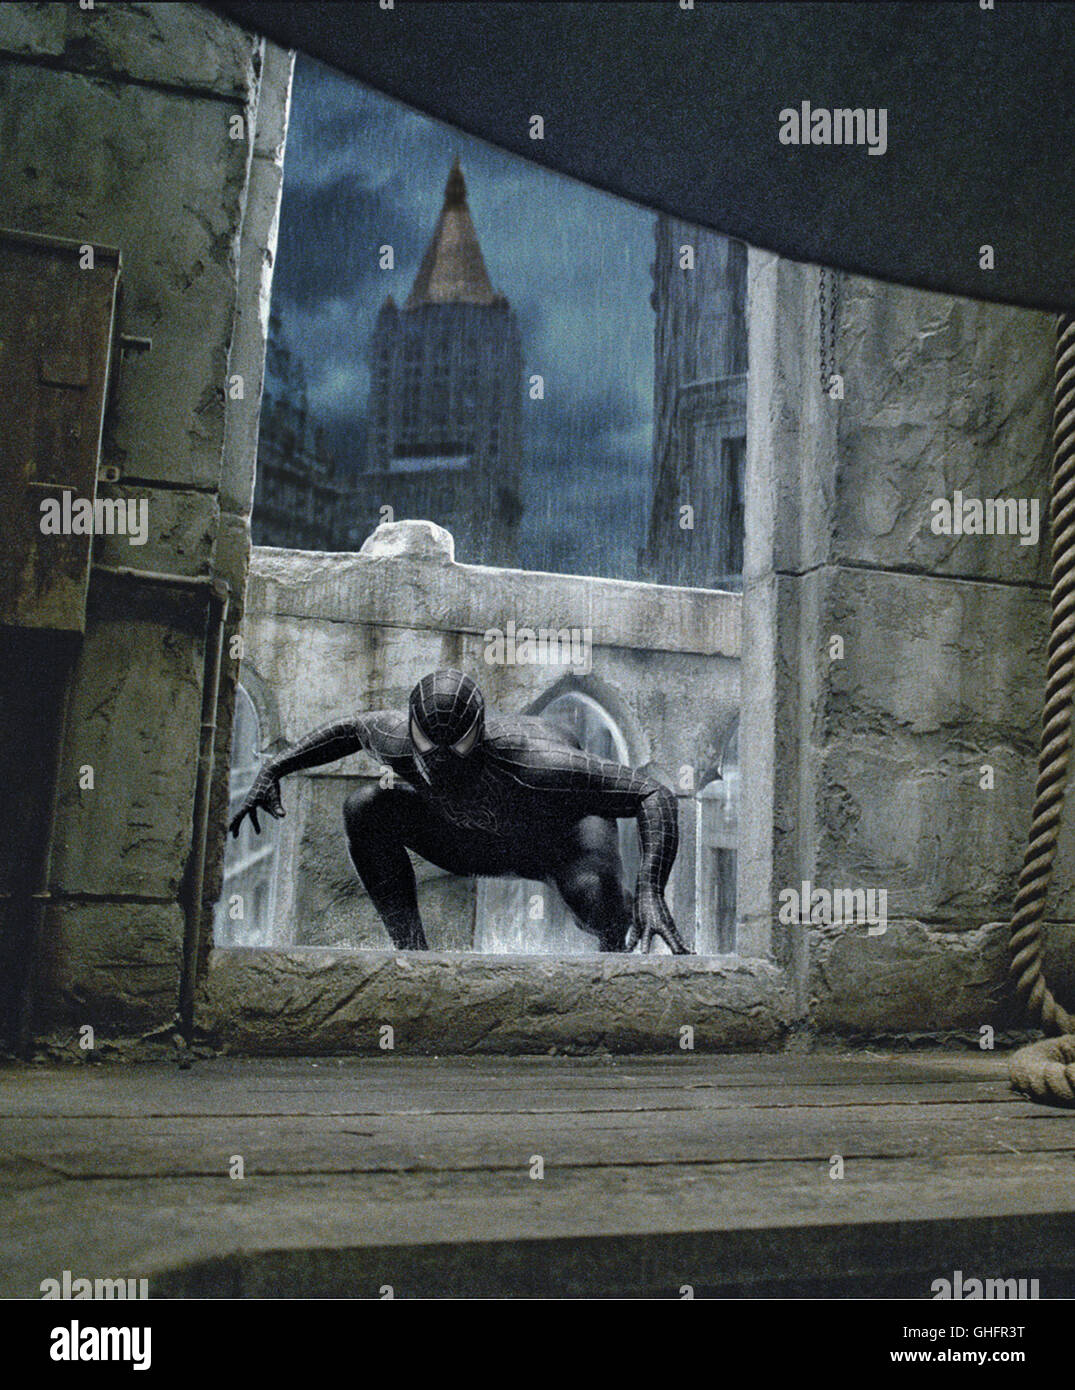 Spiderman 3 / El lado oscuro de Spiderman (Tobey Maguire) Regie: Sam Raimi aka. Spider-Man 3 Foto de stock